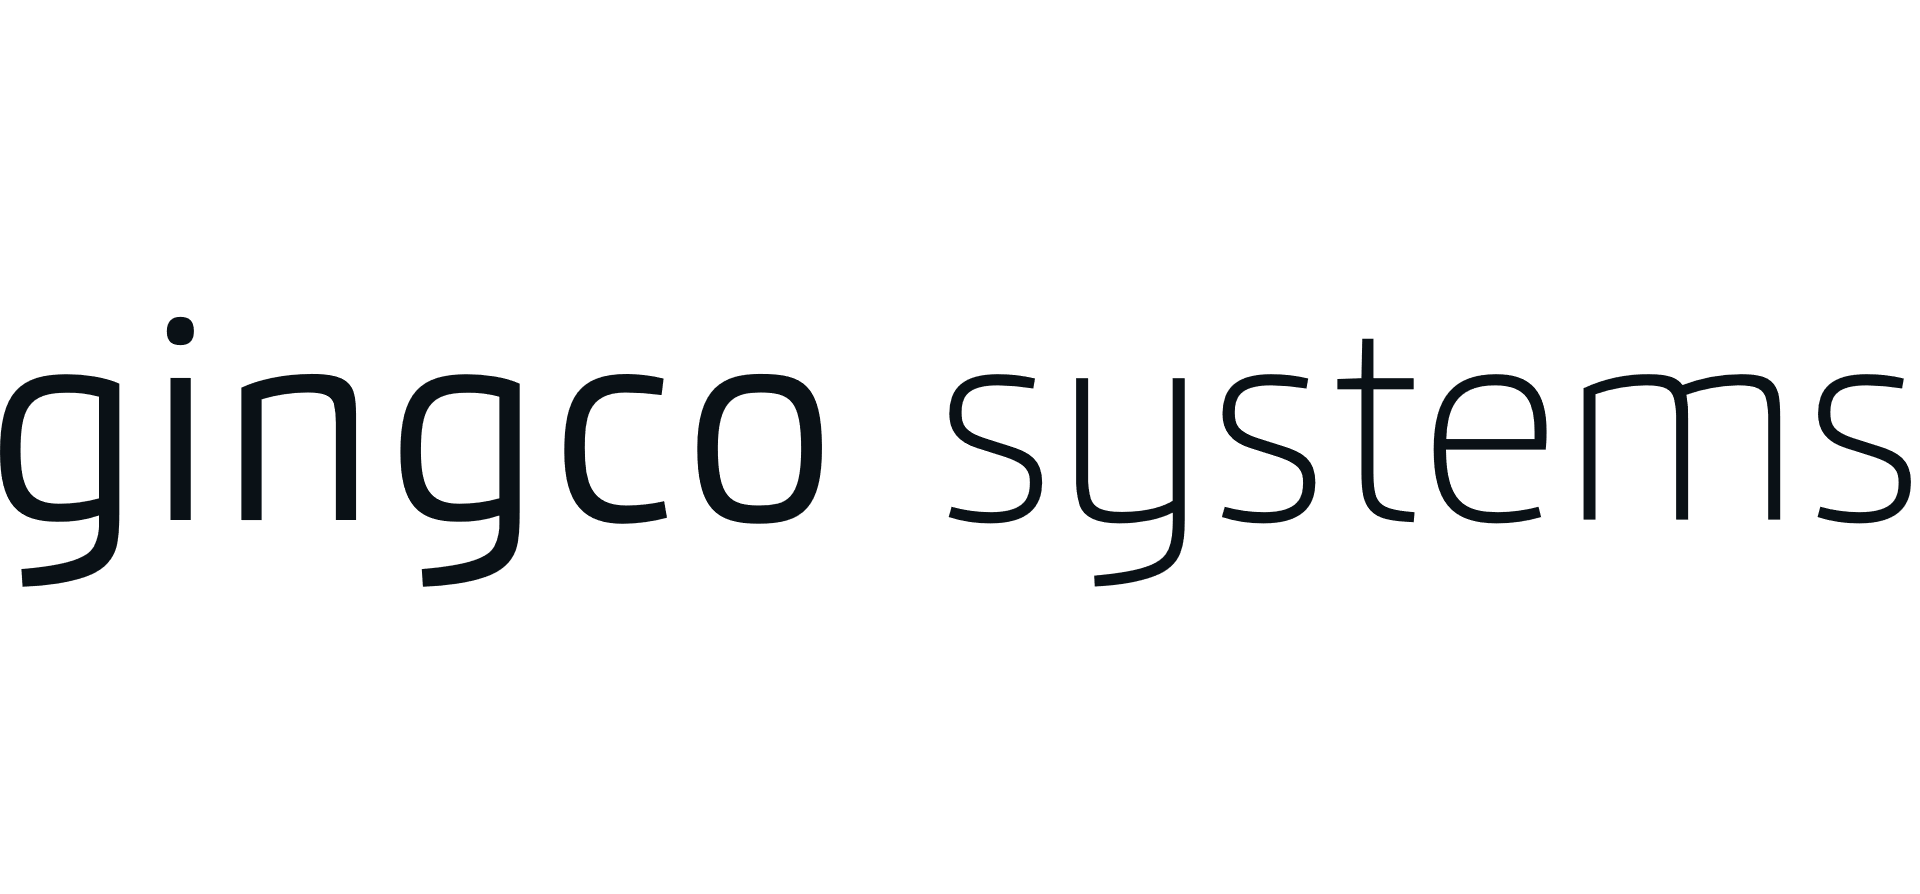 Gingco logo